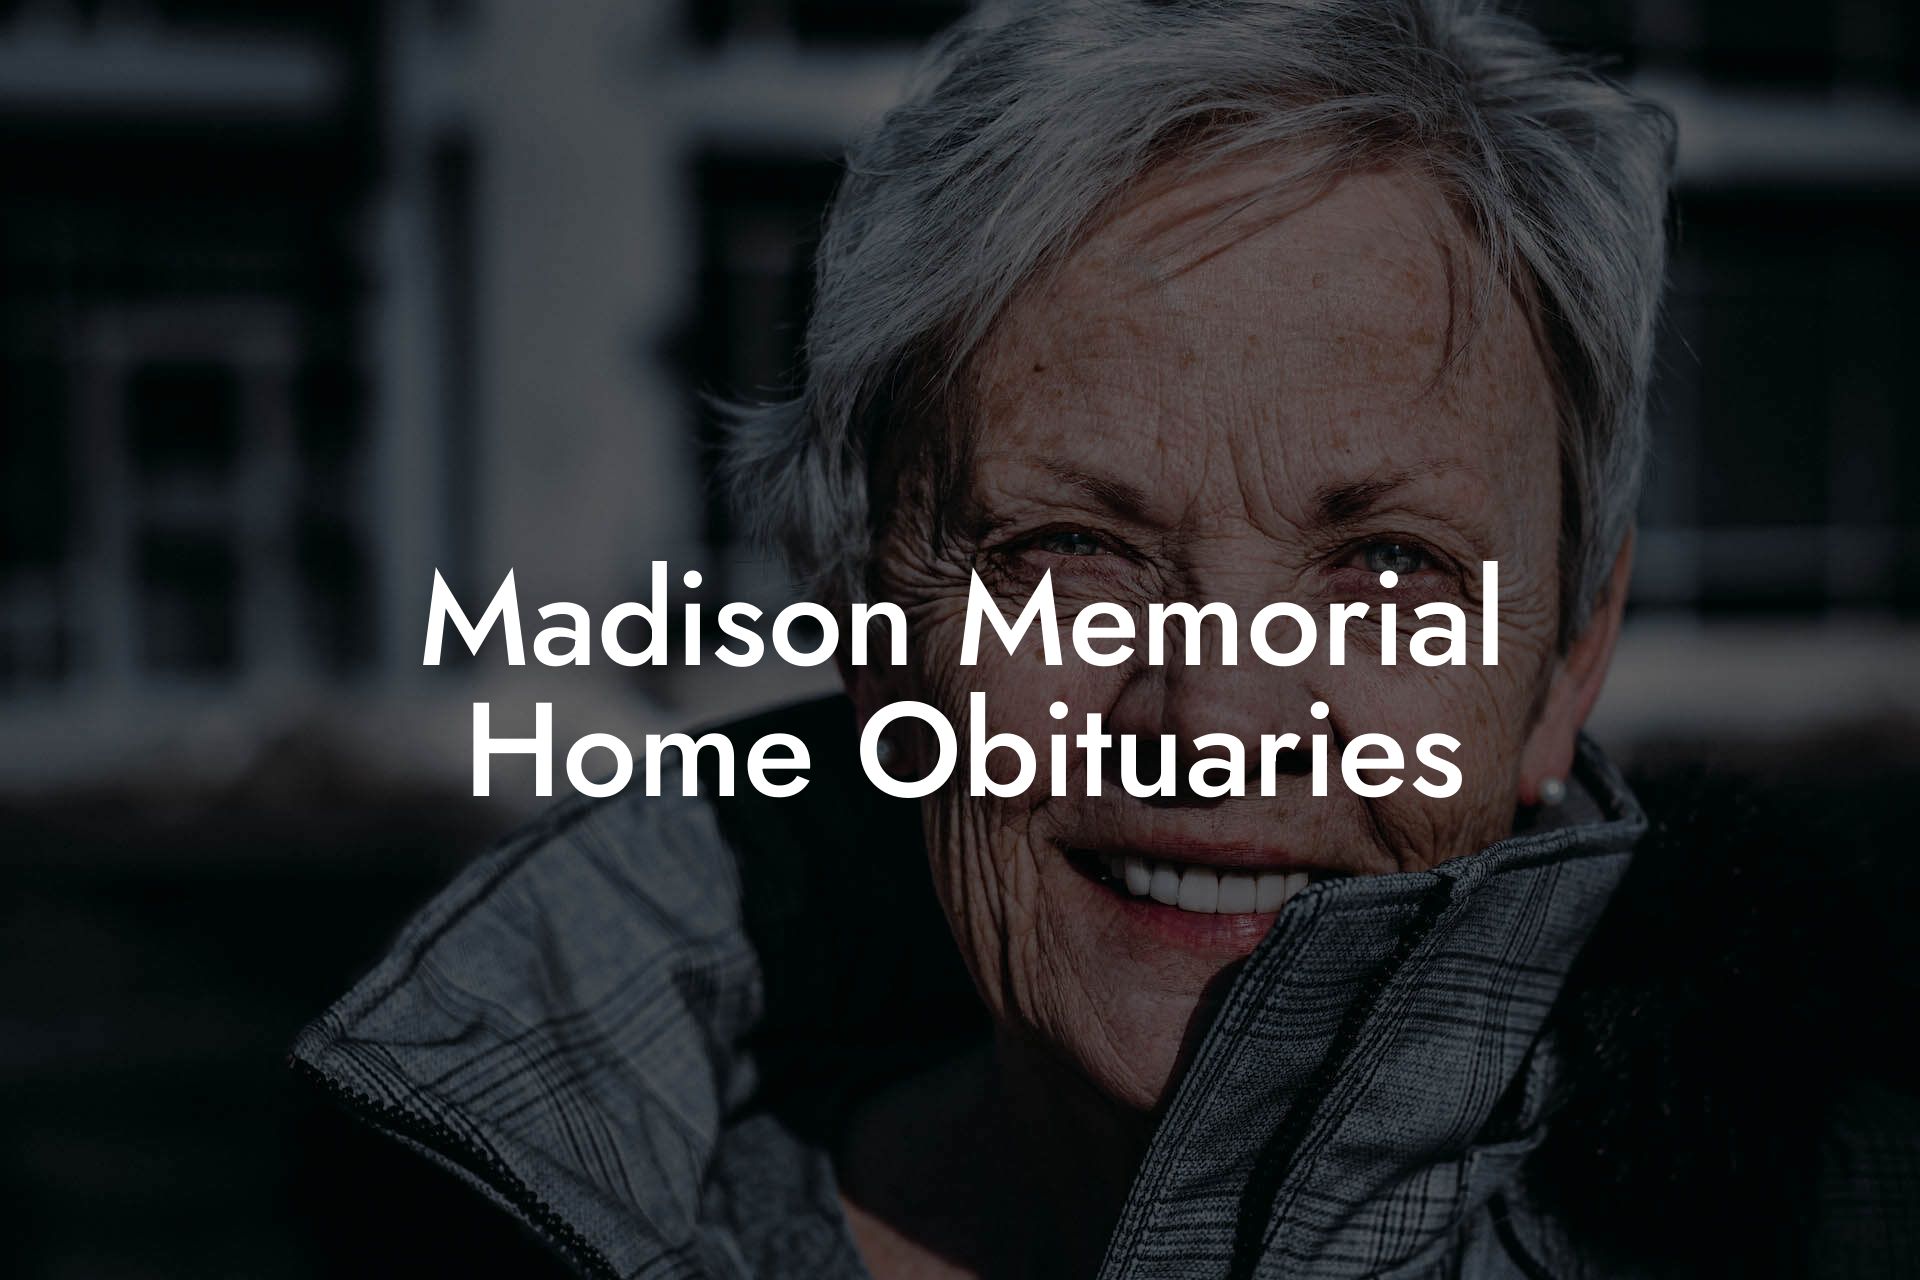 Madison Memorial Home Obituaries